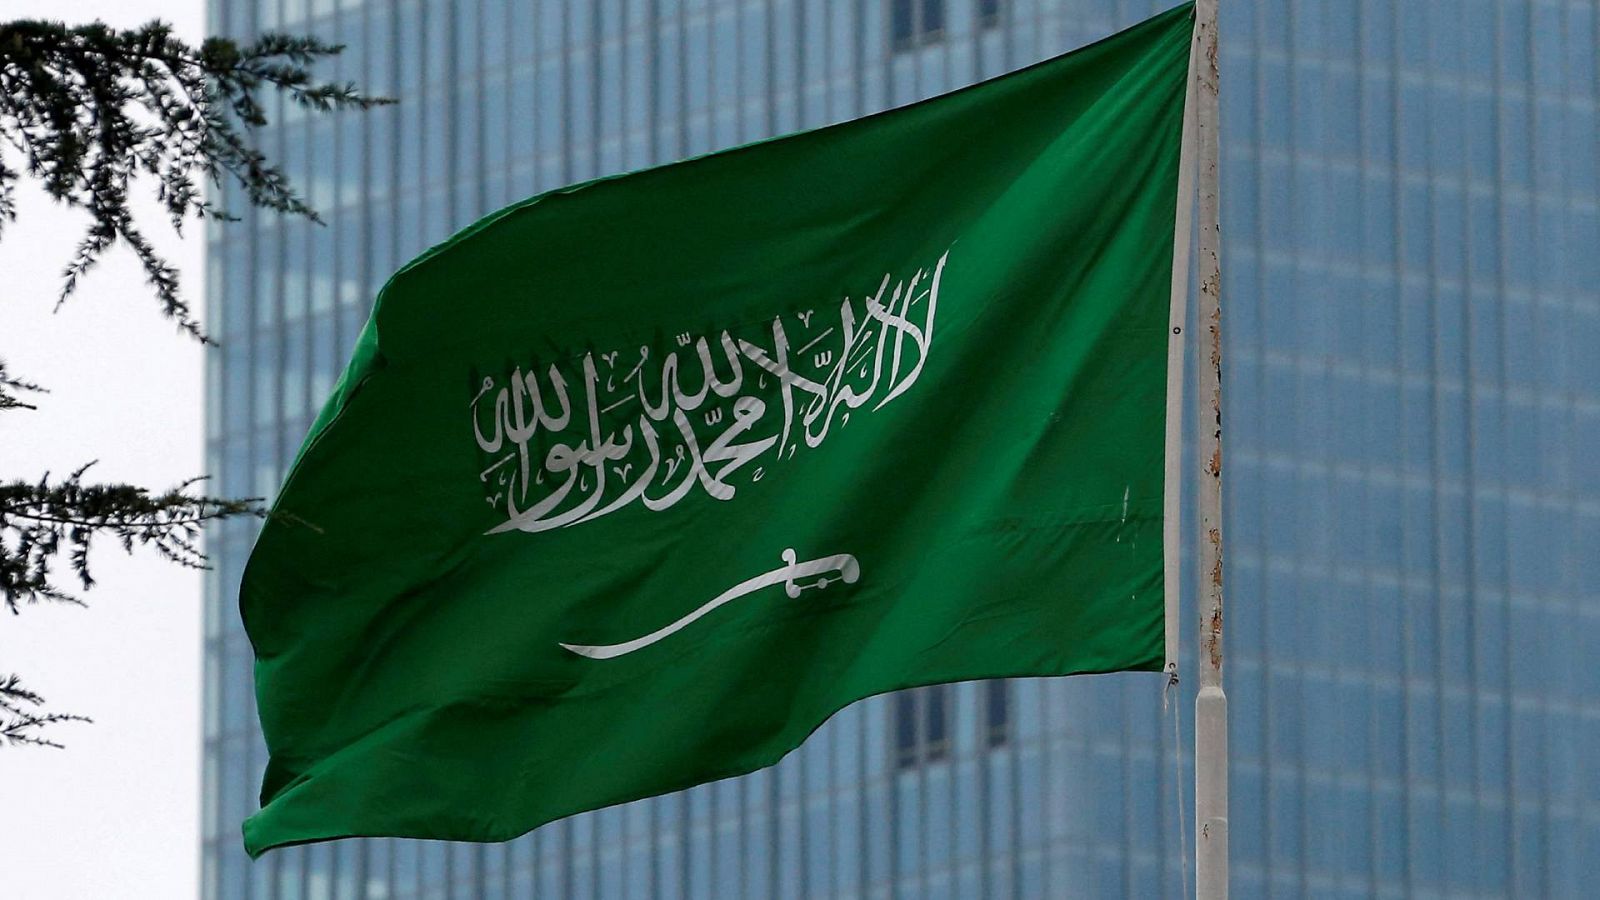 Archivo: la bandera de Arabia Saudí, en el consulado de este país en Estambul, Turquía. REUTERS/Huseyin Aldemir